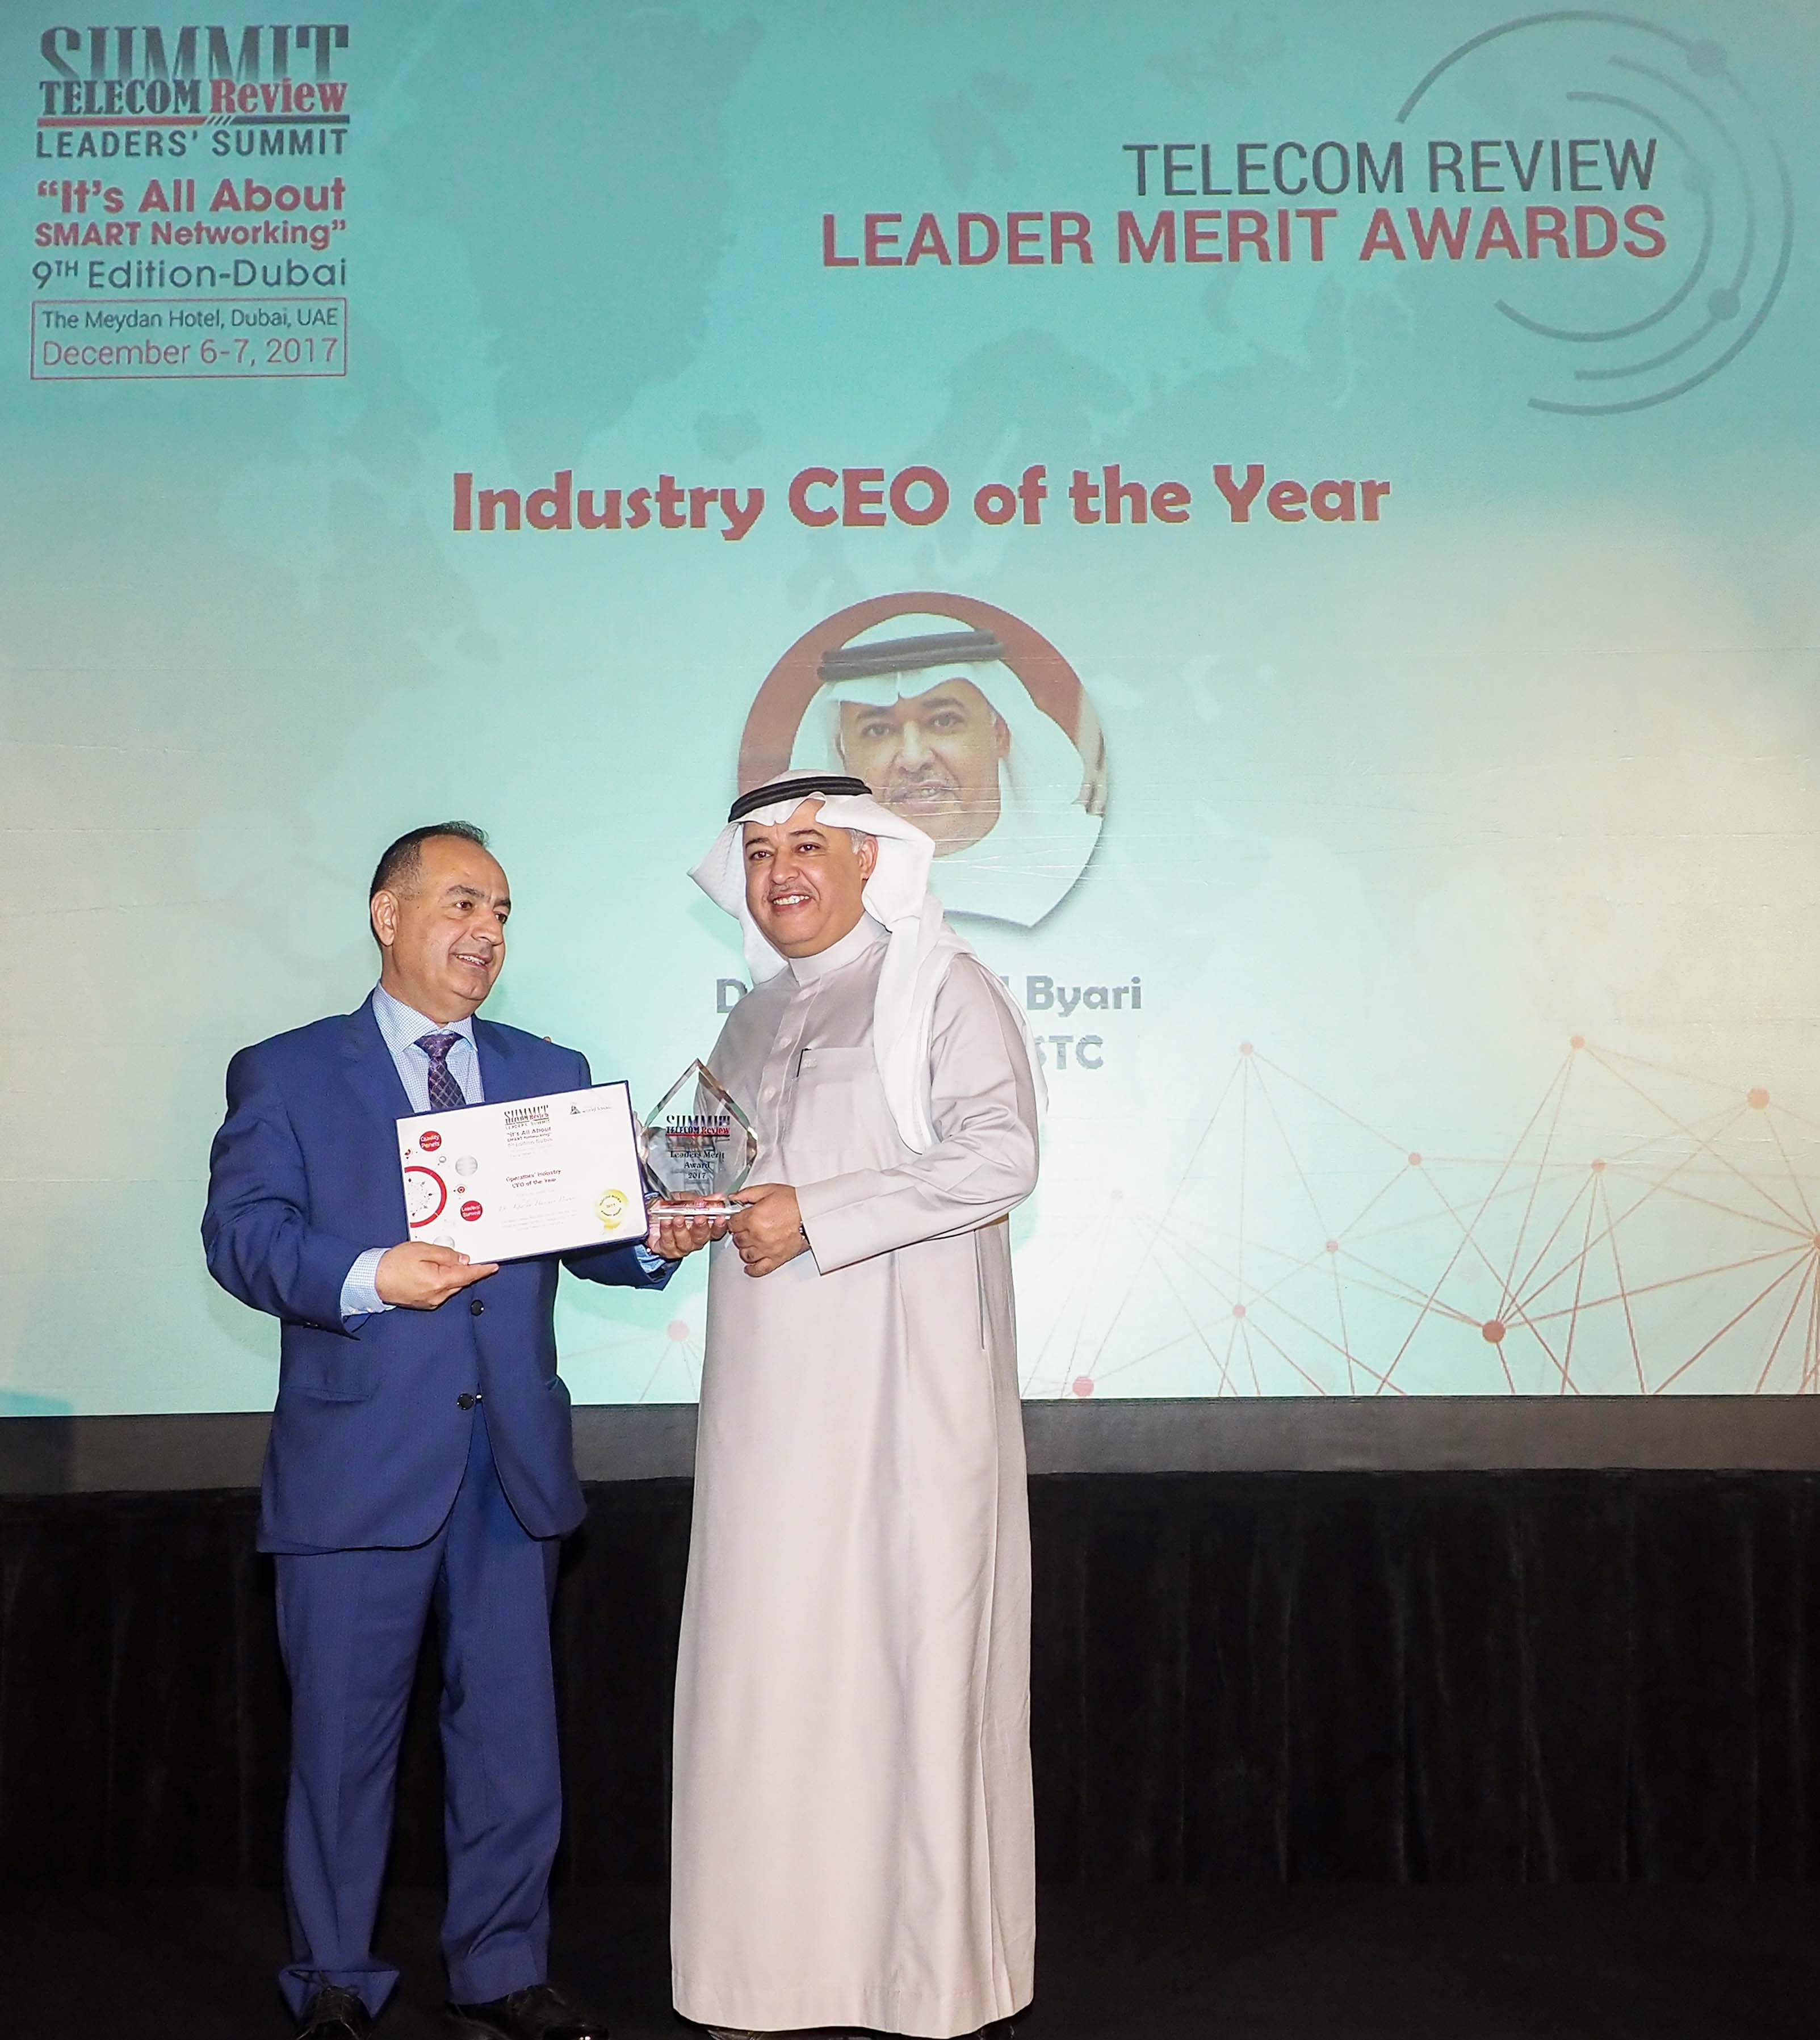 البياري يتوج بجائزة أفضل رئيس شركة اتصالات في 2017